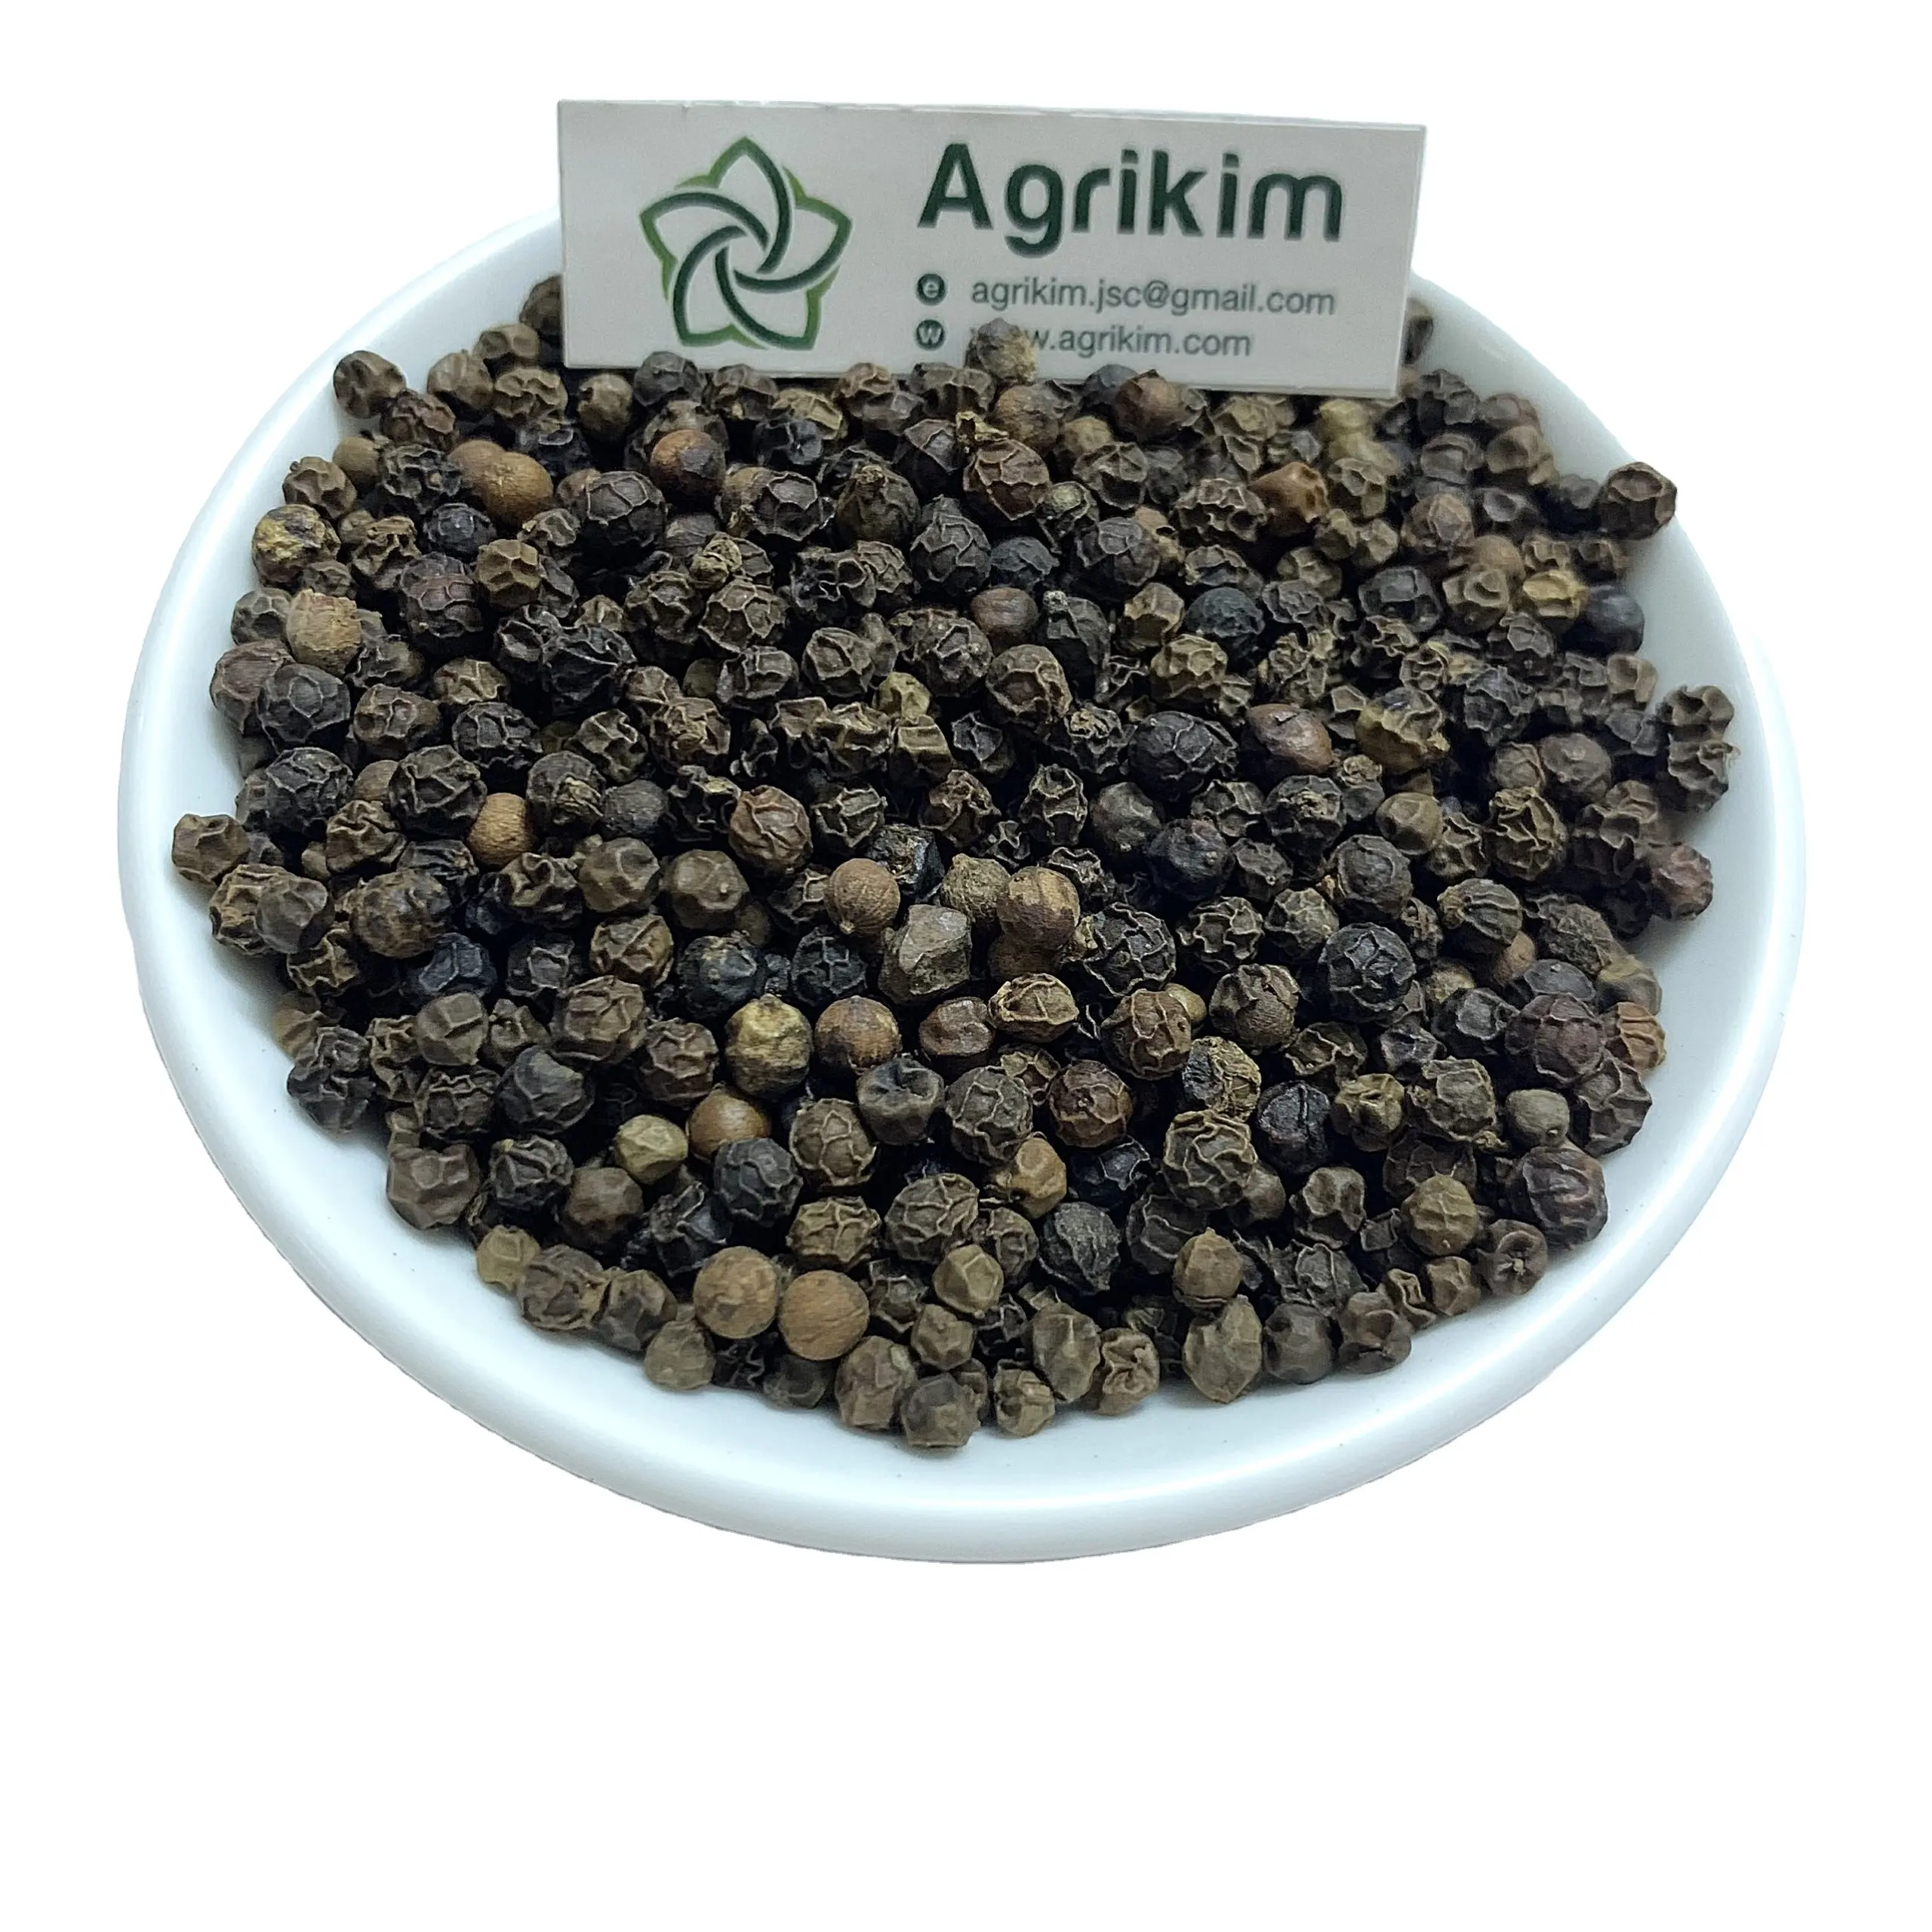 Spezie Premium & prodotti di erbe essiccate pepe nero di qualità superiore ricca di sapore nuova stagione dalla fabbrica del Vietnam